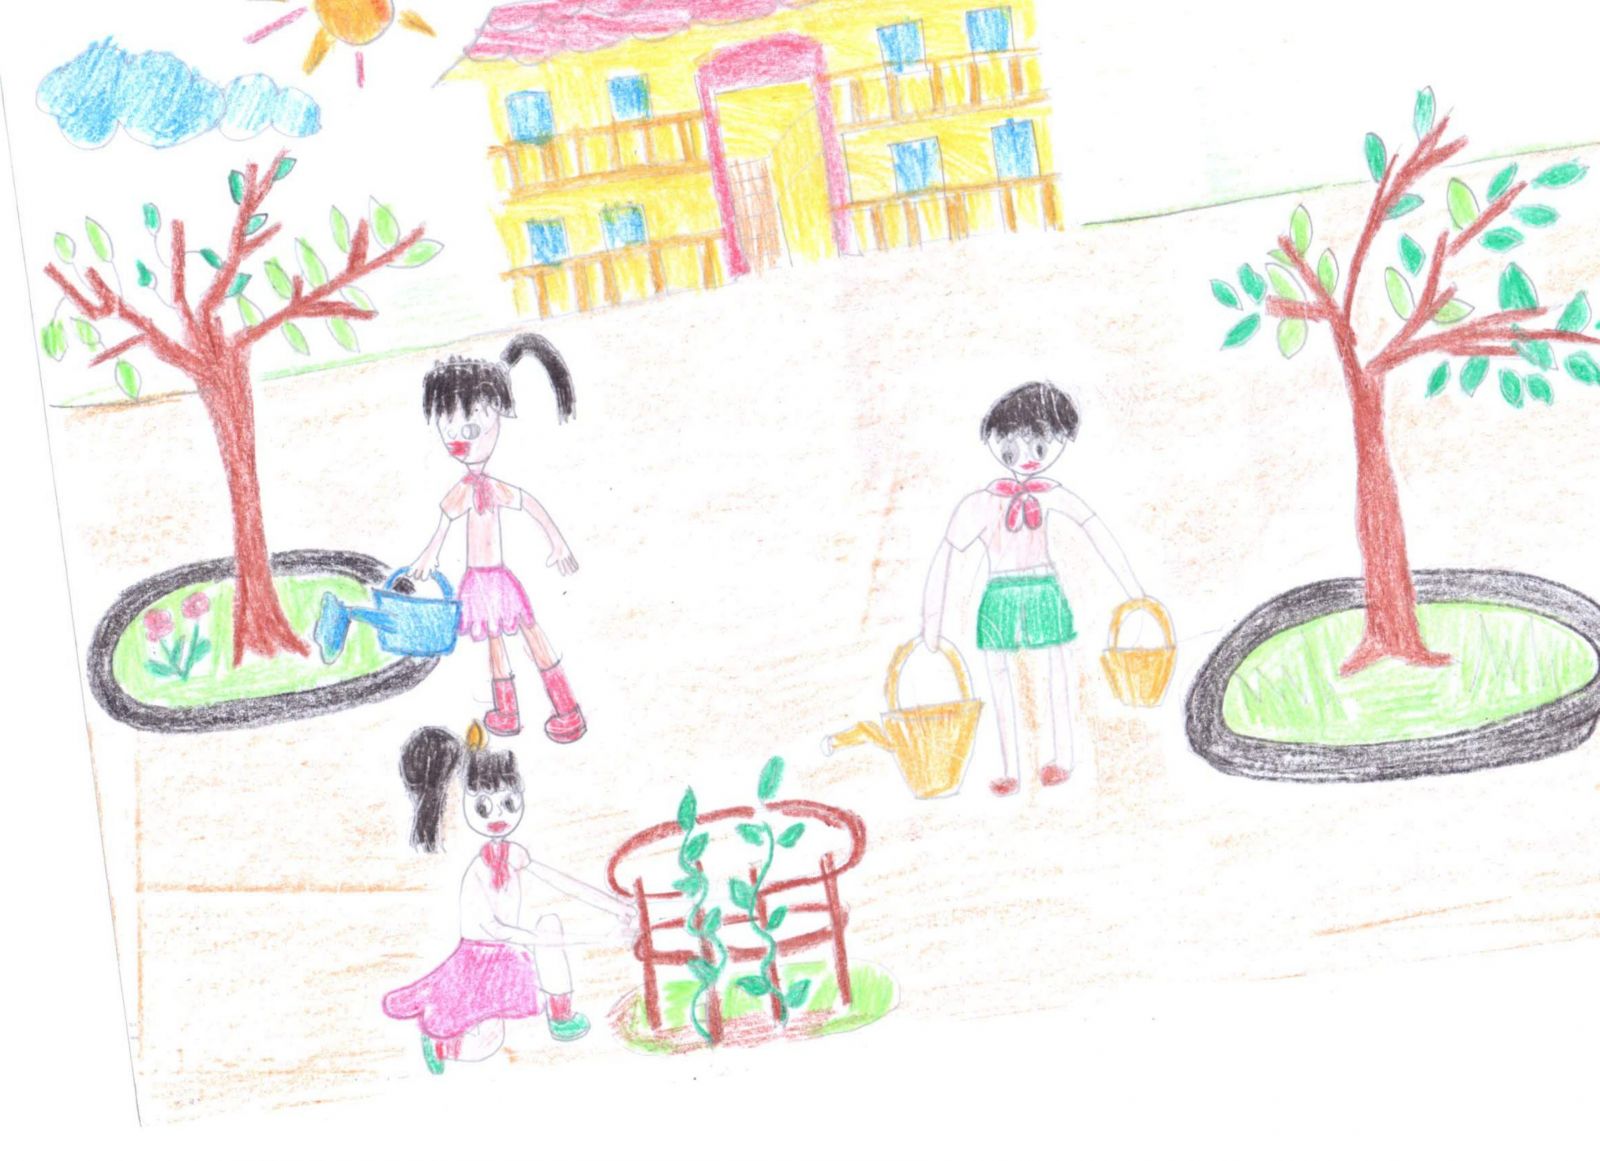 Một số tác phẩm vẽ tranh về trường THPT Nguyễn Siêu